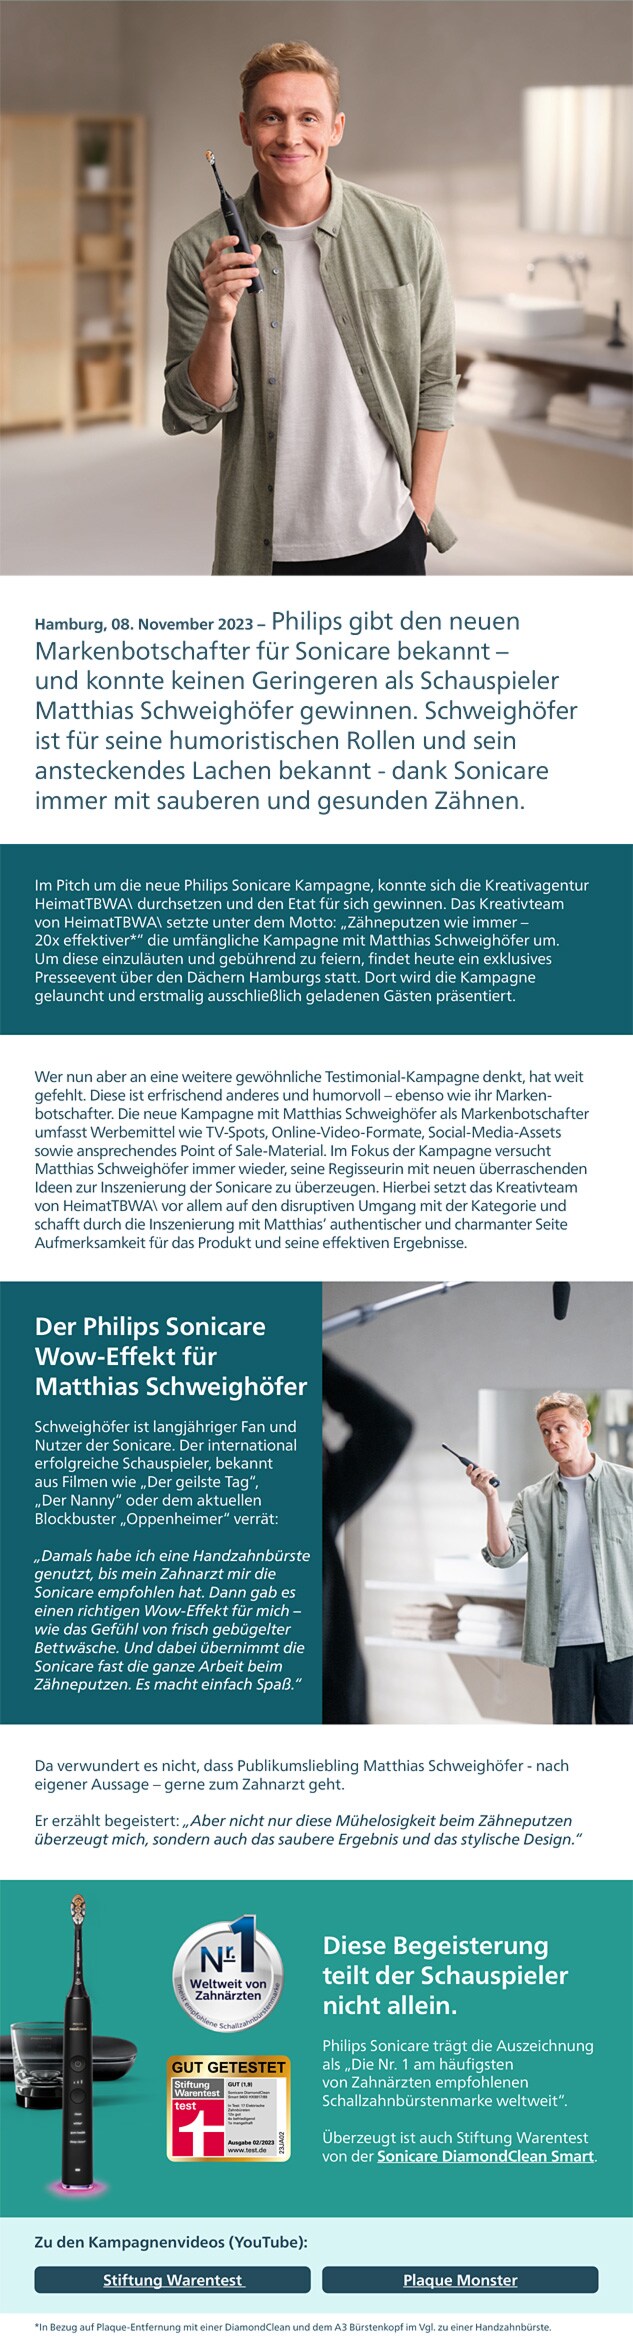 Philips Themensheet - Neue humorvolle Kampagne mit Matthias Schweighöfer